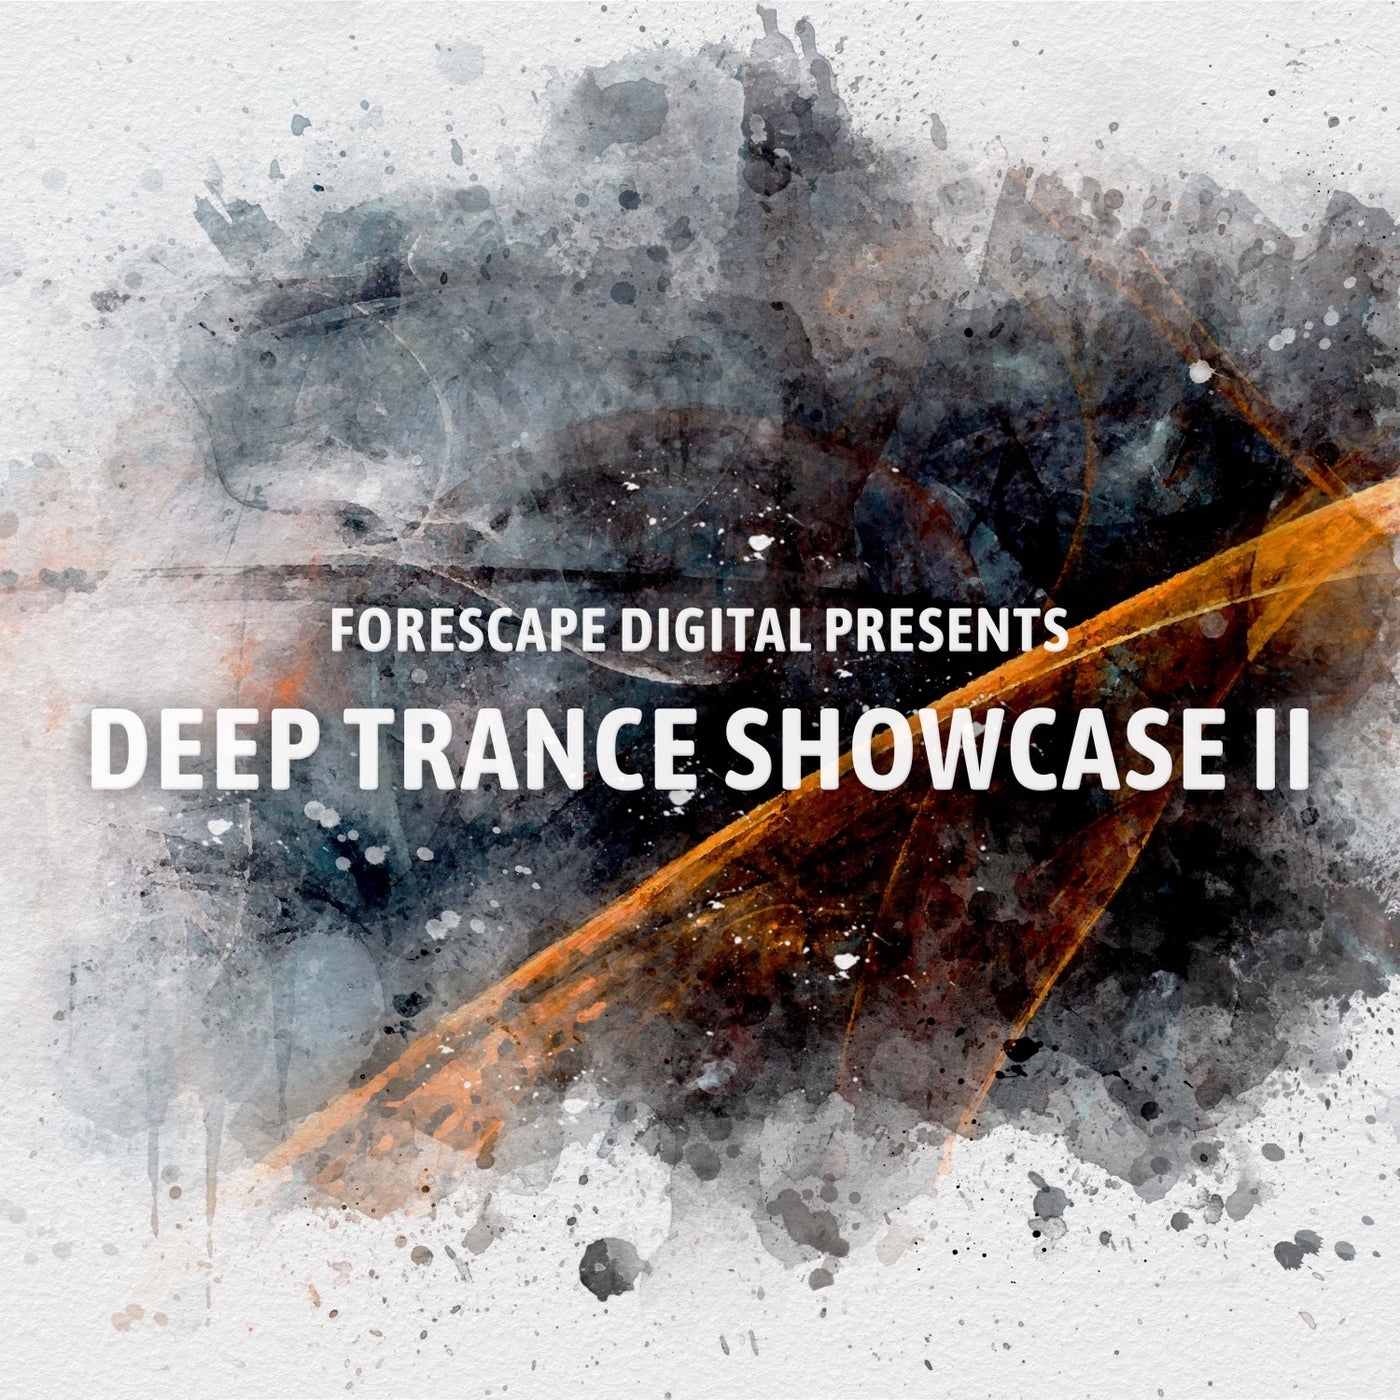 Deep Trance Showcase II